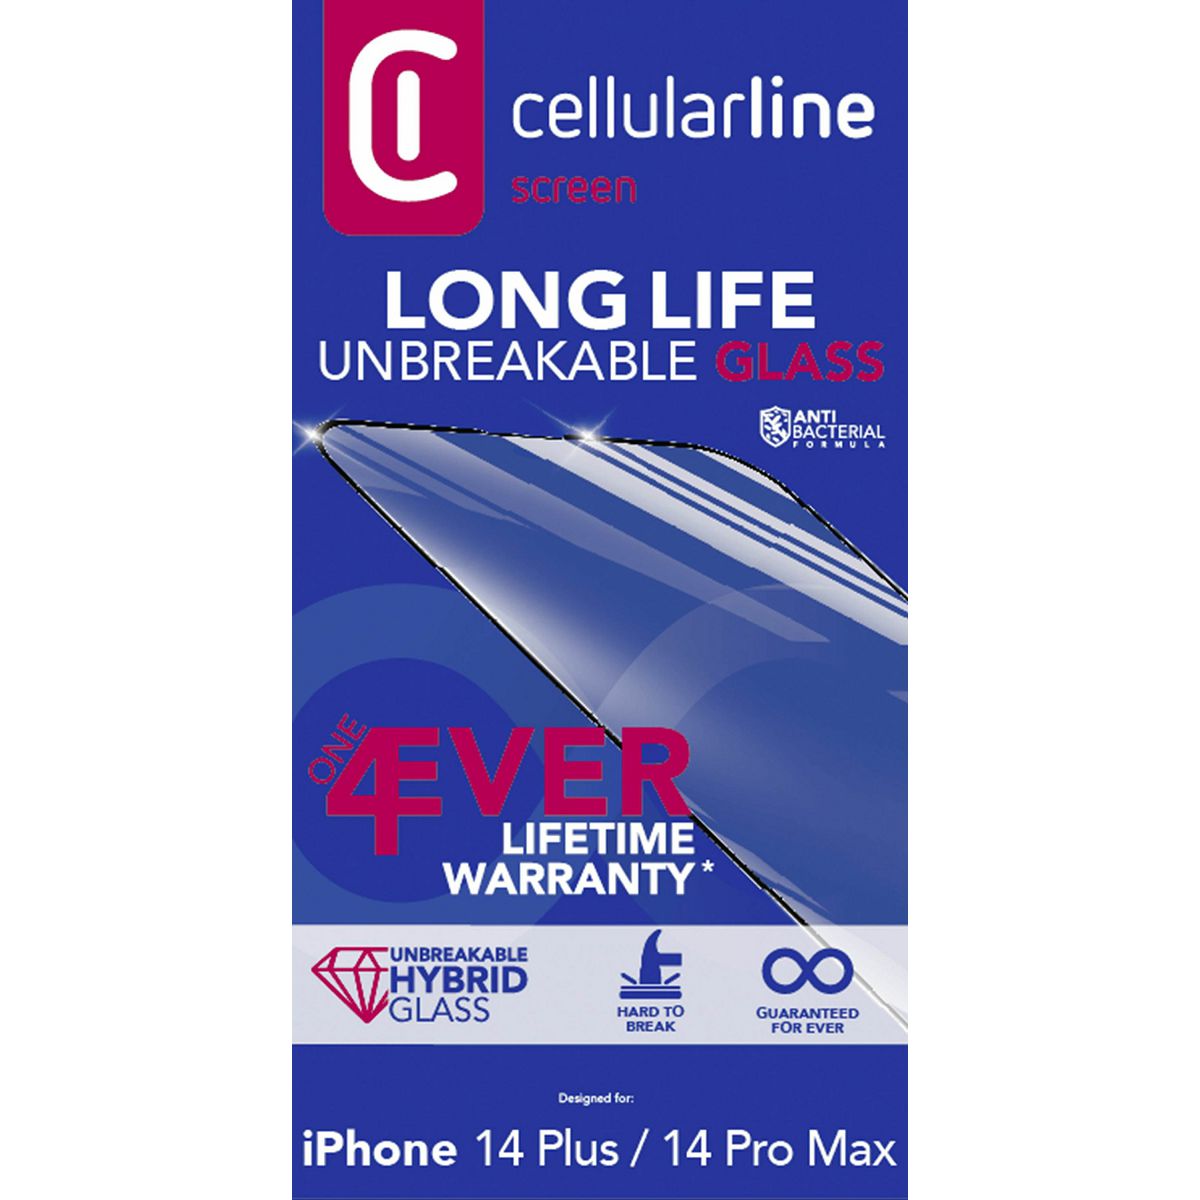 cellularline-zascitno-steklo-longlifeiphone-14max-14806-102044_1.jpg